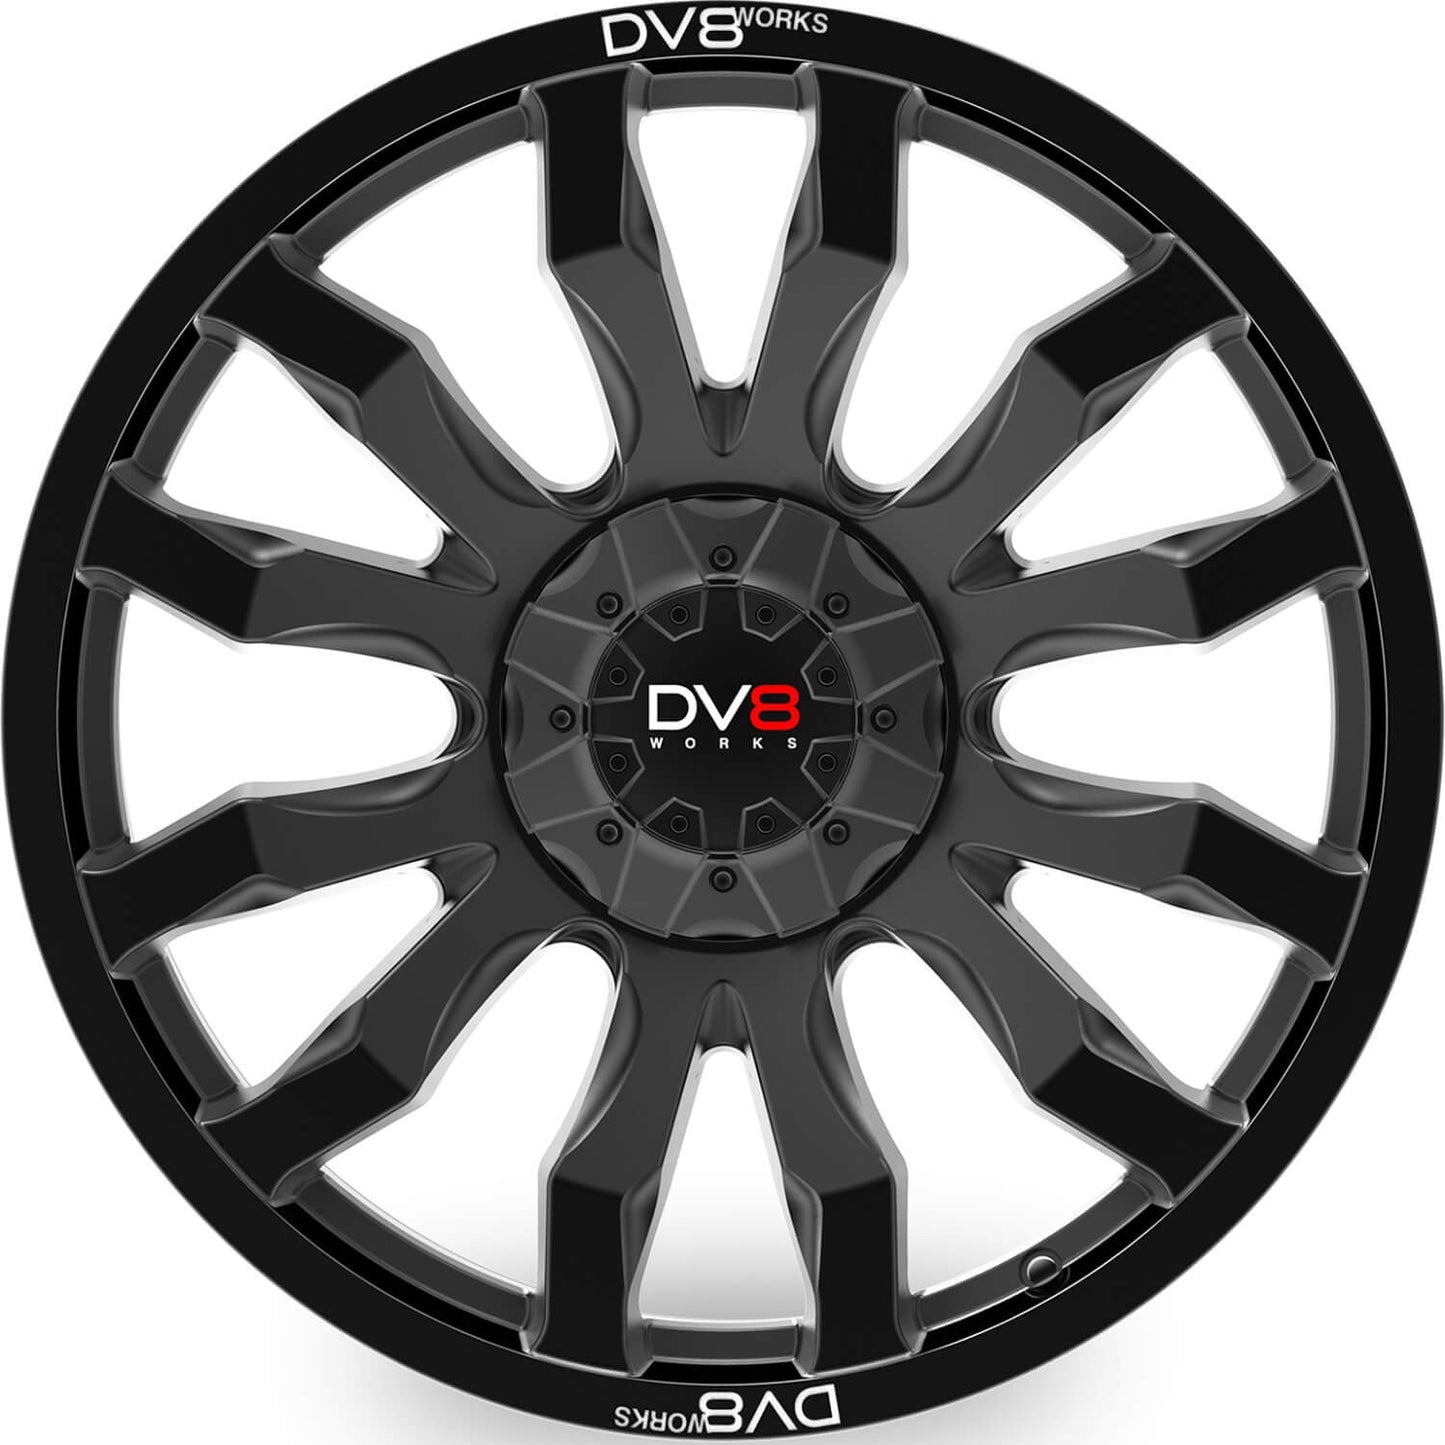 DV8 Works Edge Black 20" Alloy Wheel - Next-Gen Ranger UK